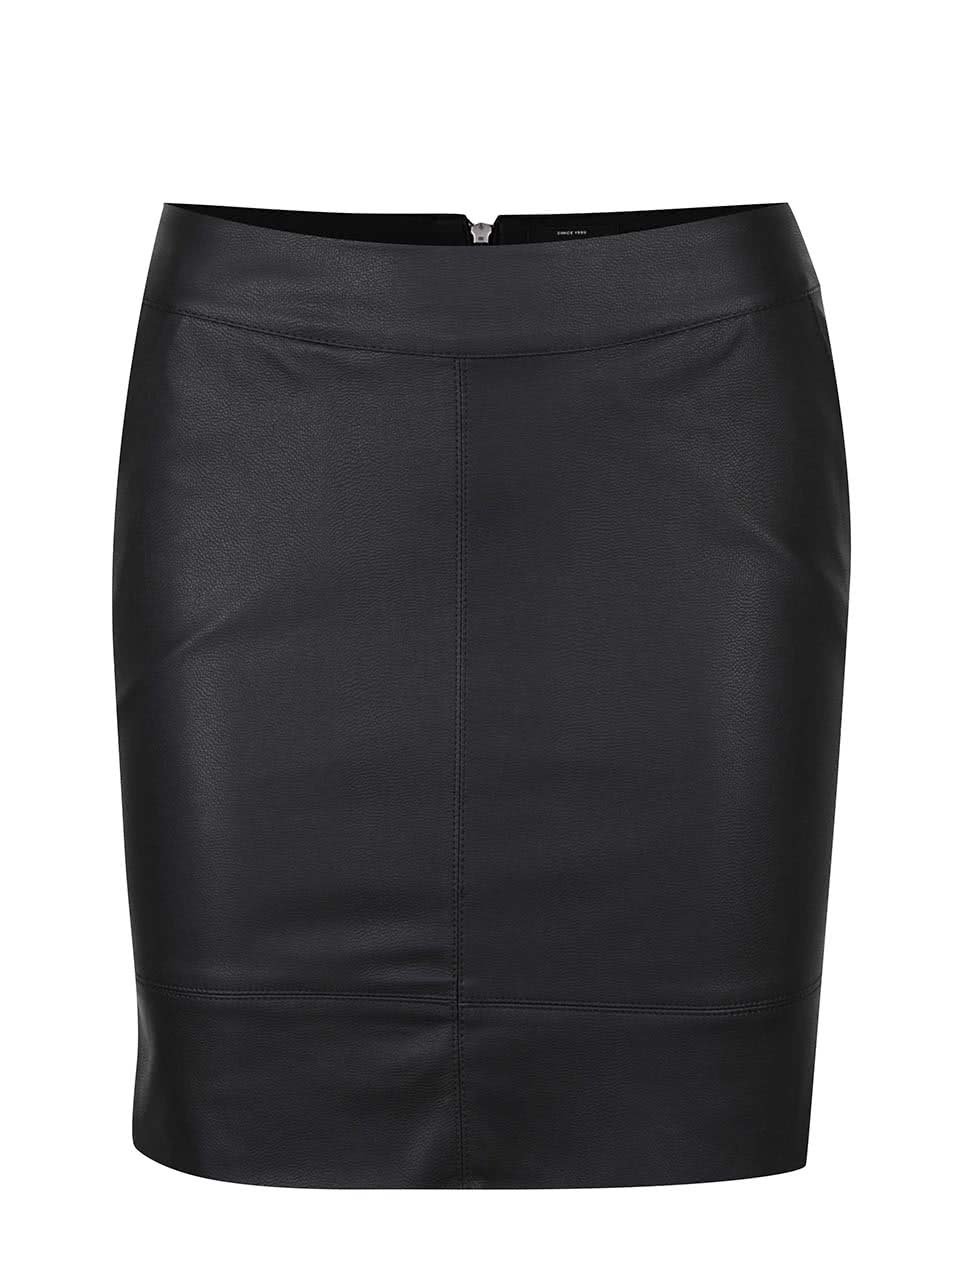 Černá koženková sukně s kapsami ONLY Base